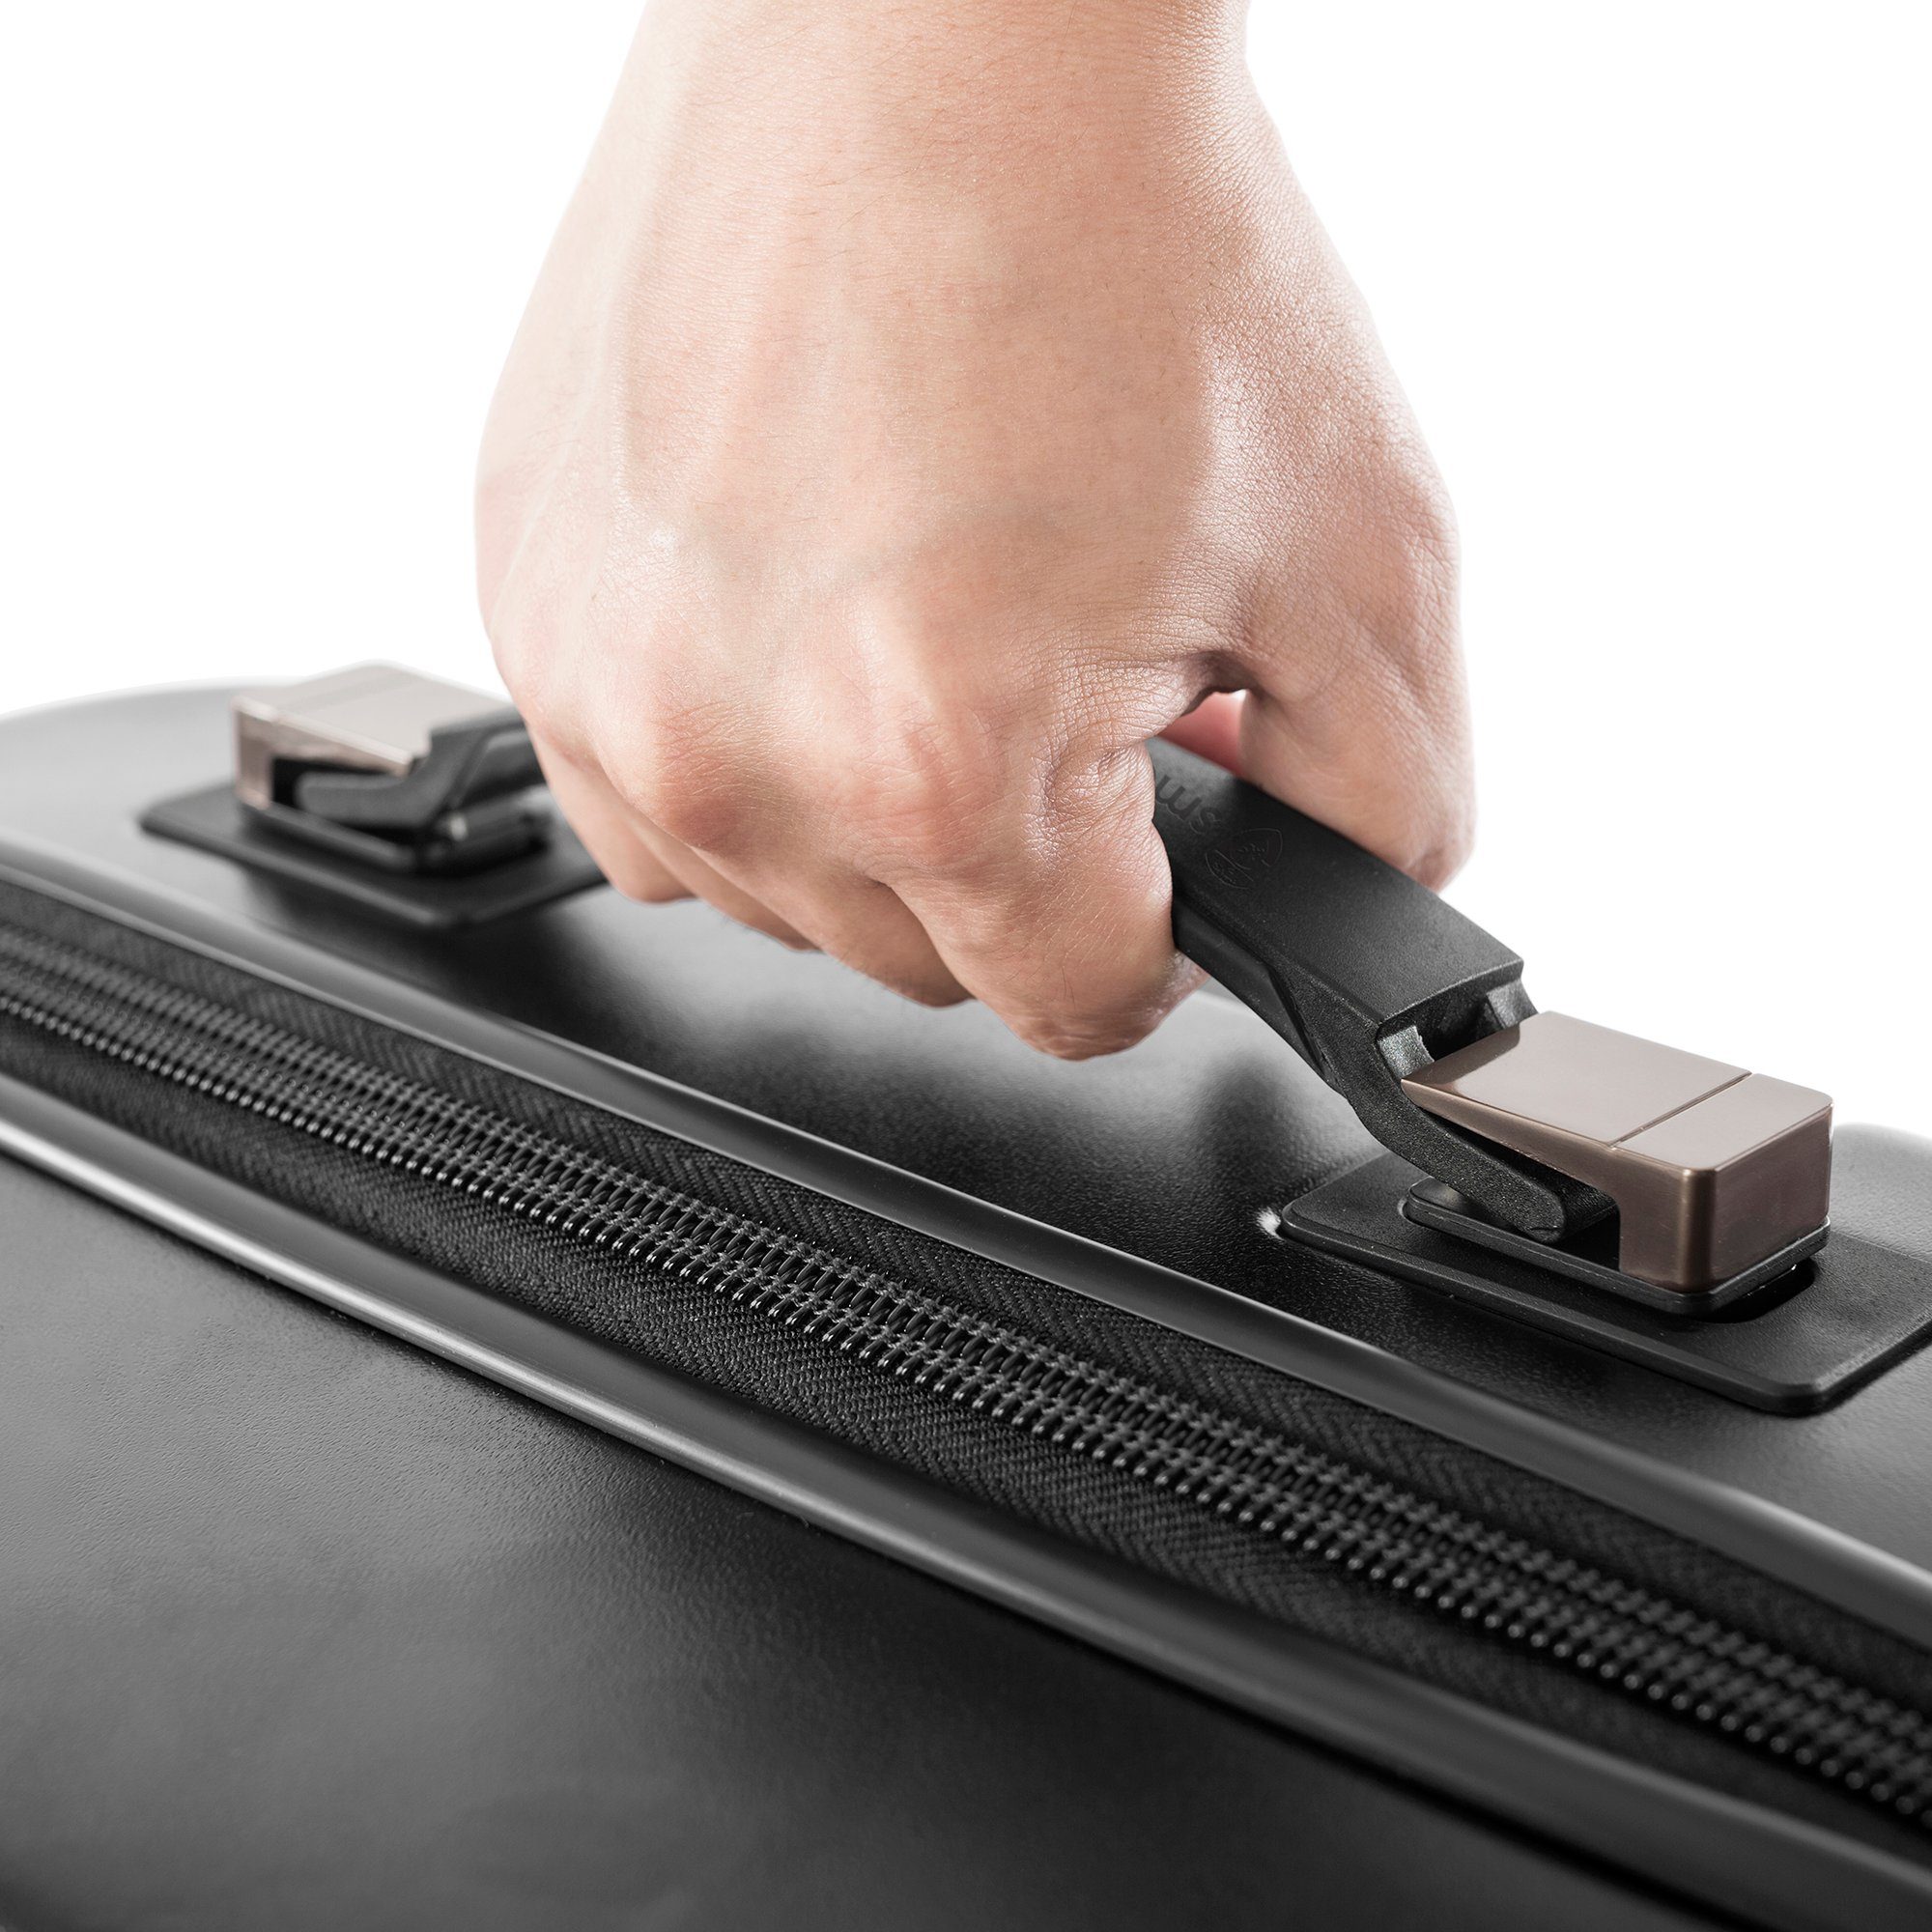 Heys Hartschalen-Trolley Smart Luggage®, 76 Rollen, 4 vollständig App-Funktion Black mit High-End-Gepäck cm, venetztes